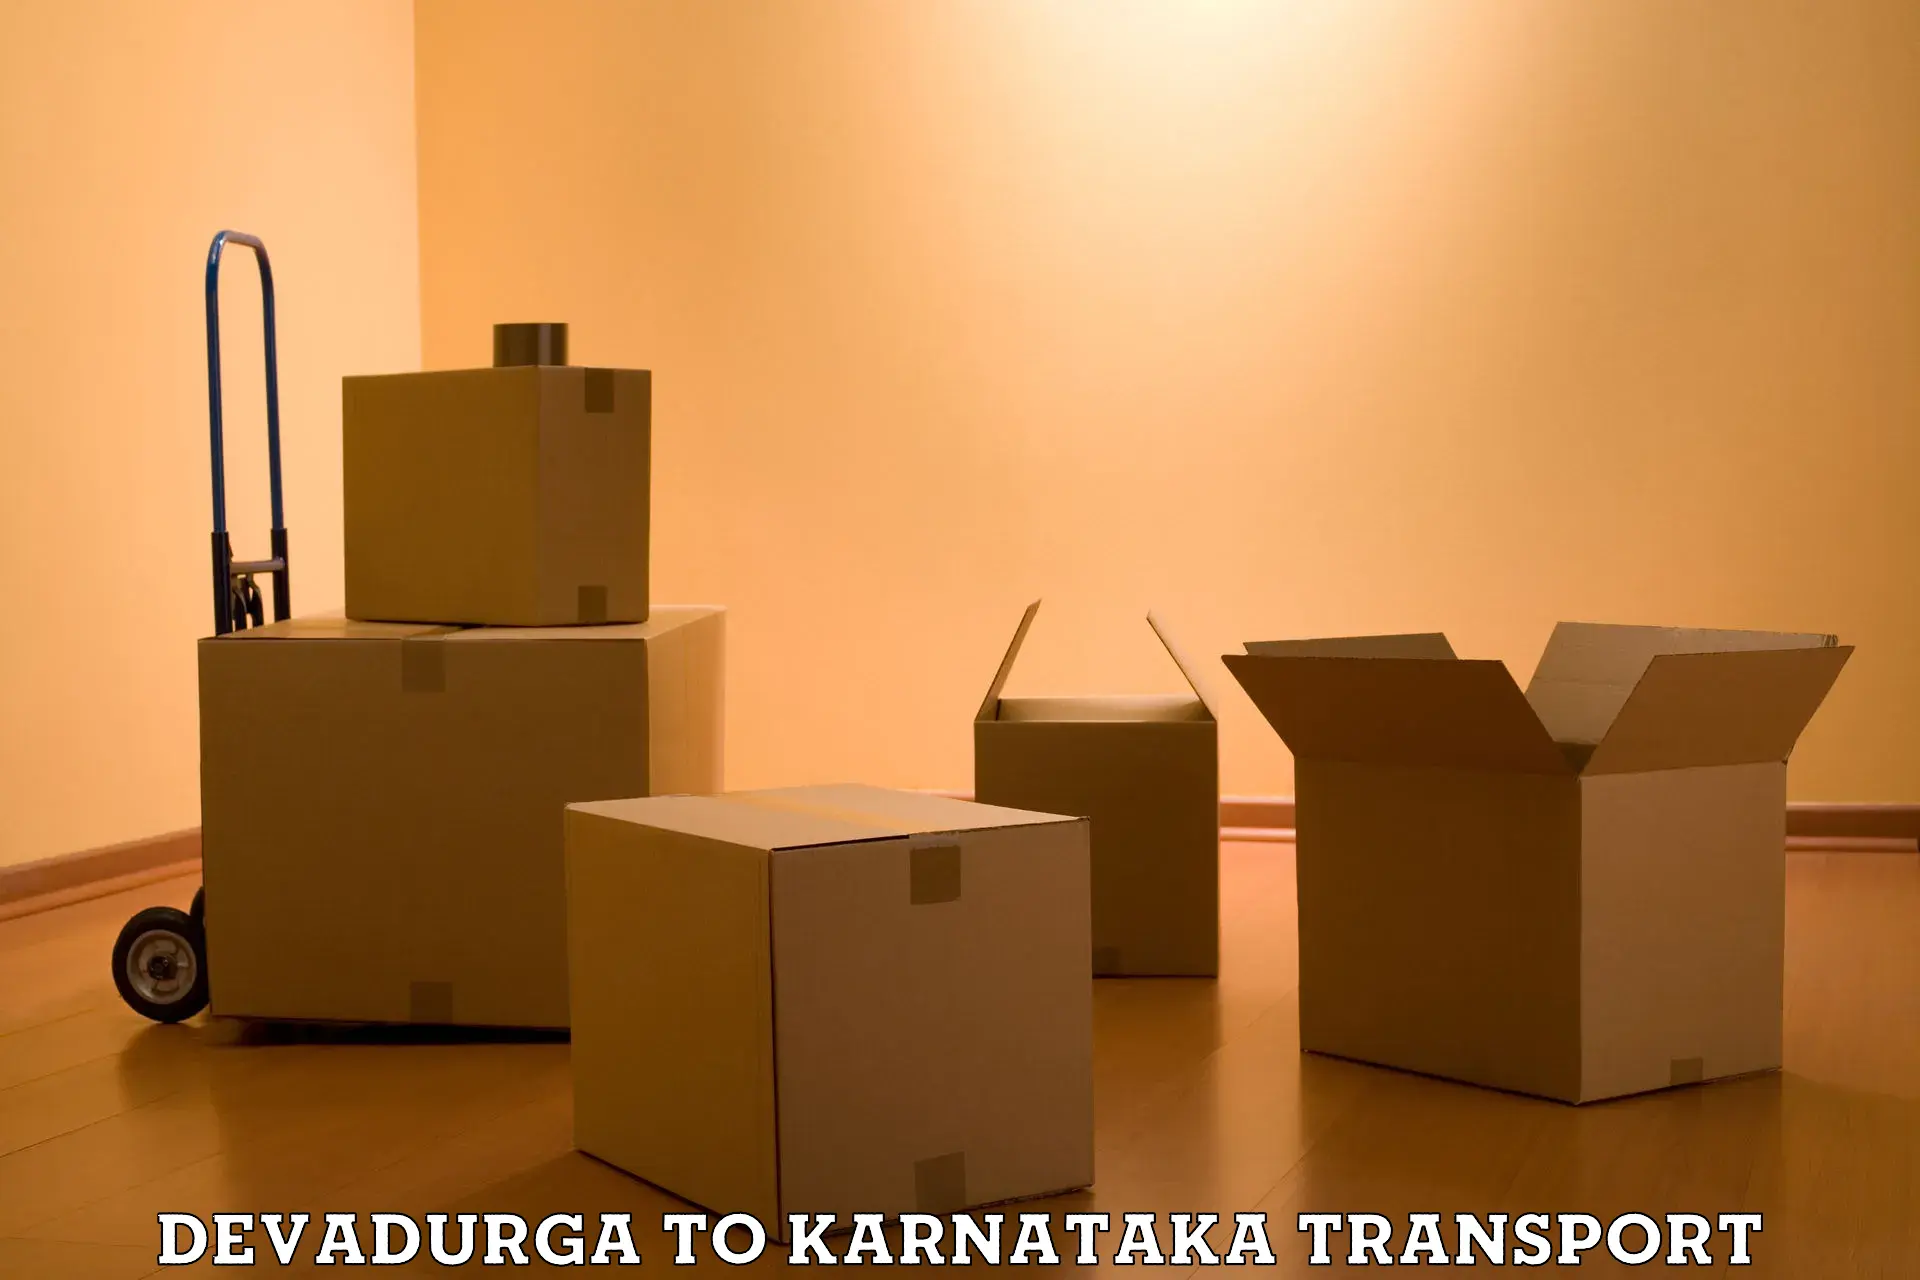 Shipping services Devadurga to Kanjarakatte